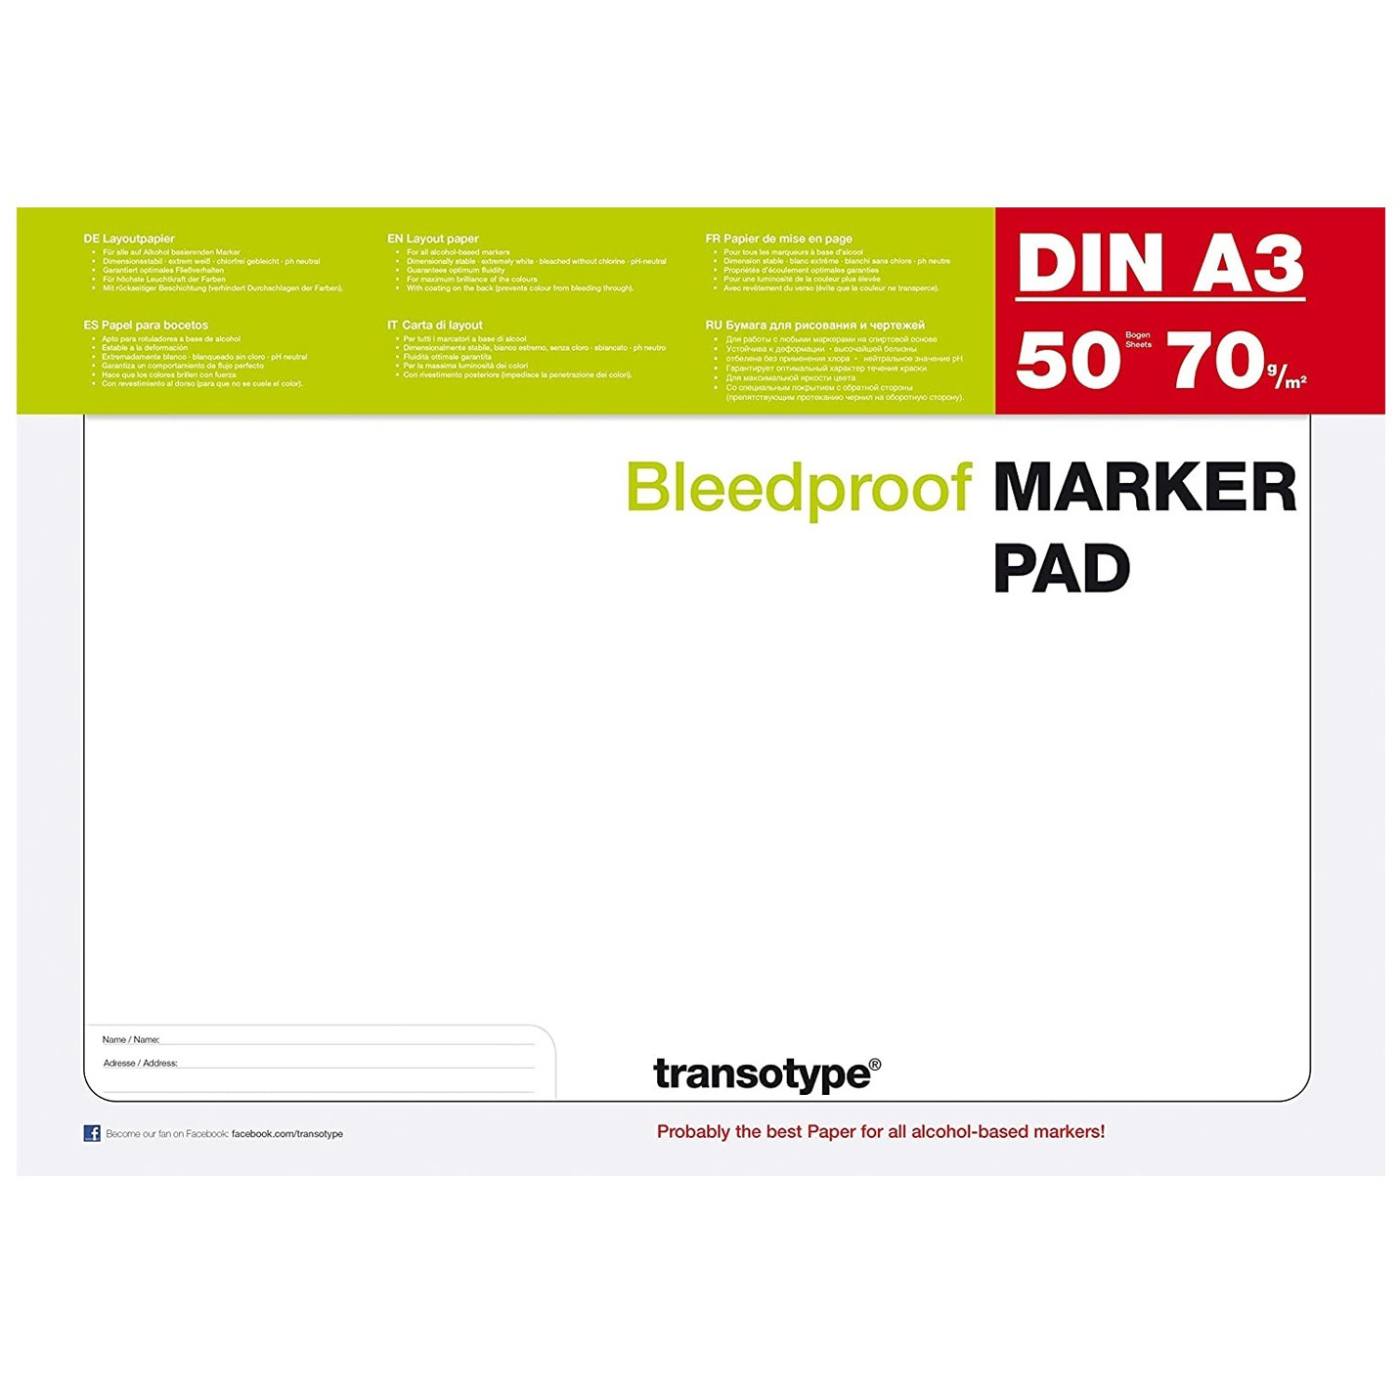 COPIC marqueurs Bloc DIN a3 70g/m² présentation papier transotype Marker Pad 50 feuilles